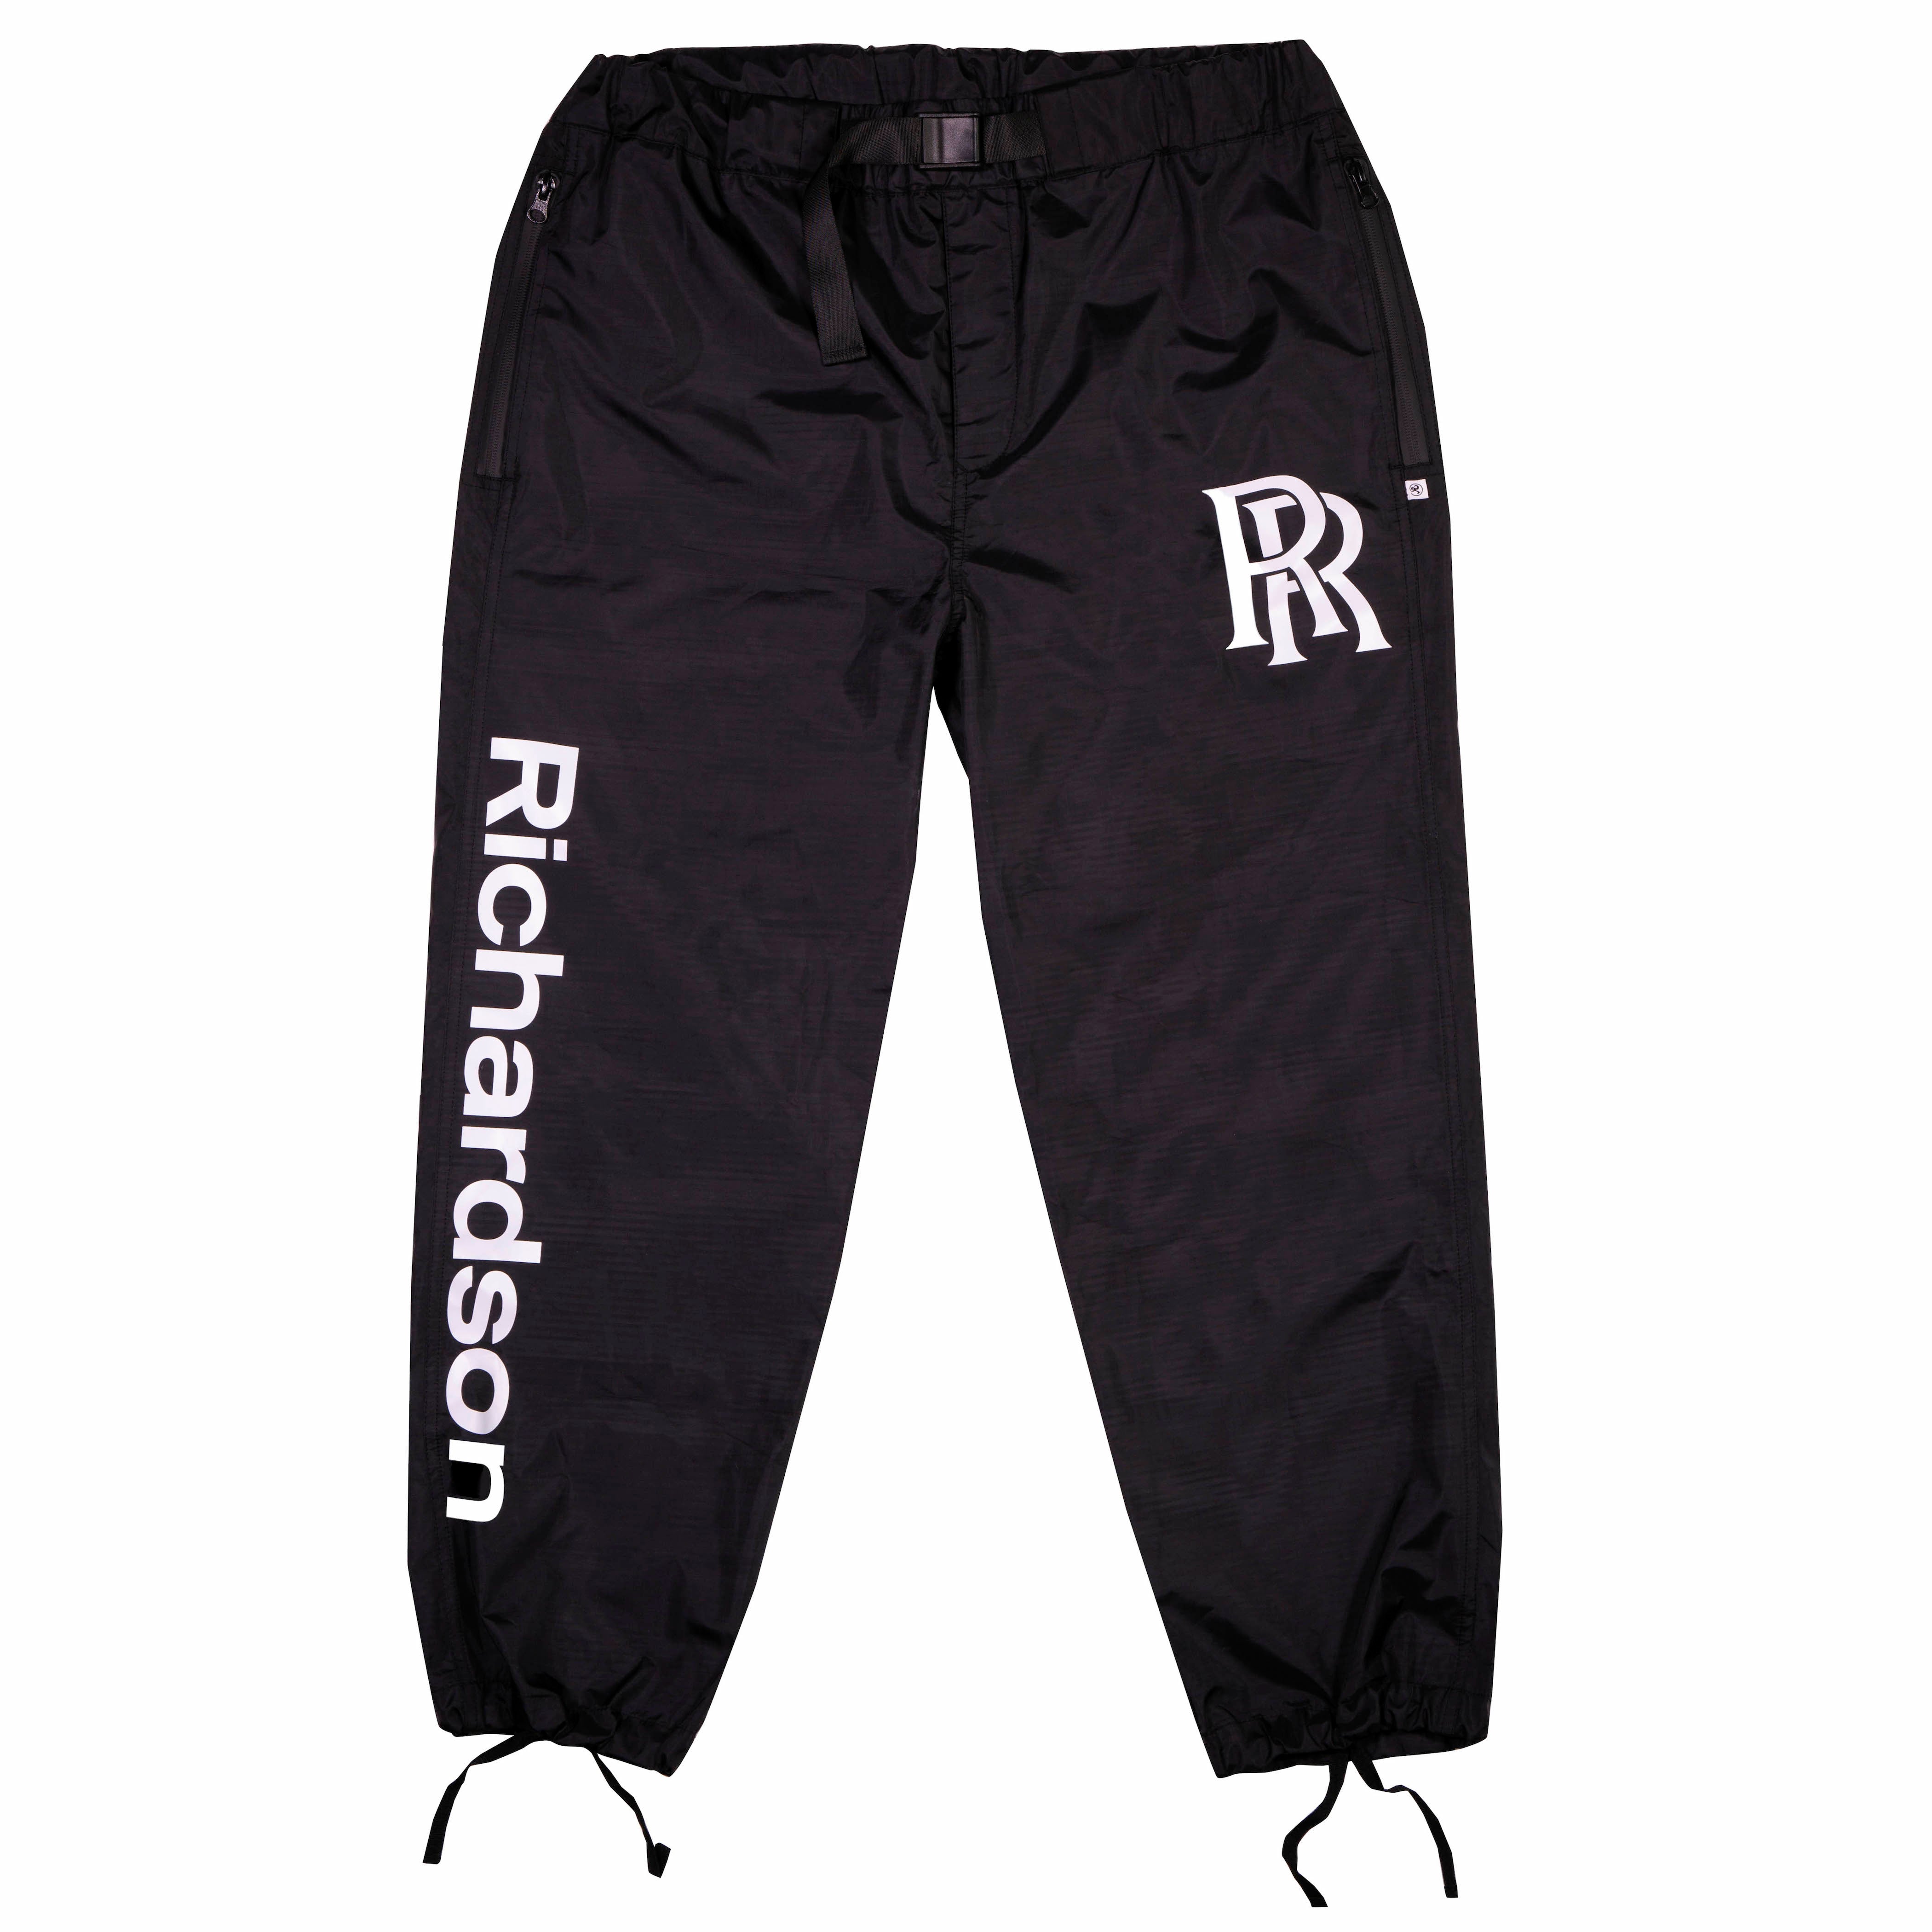 rr track pants